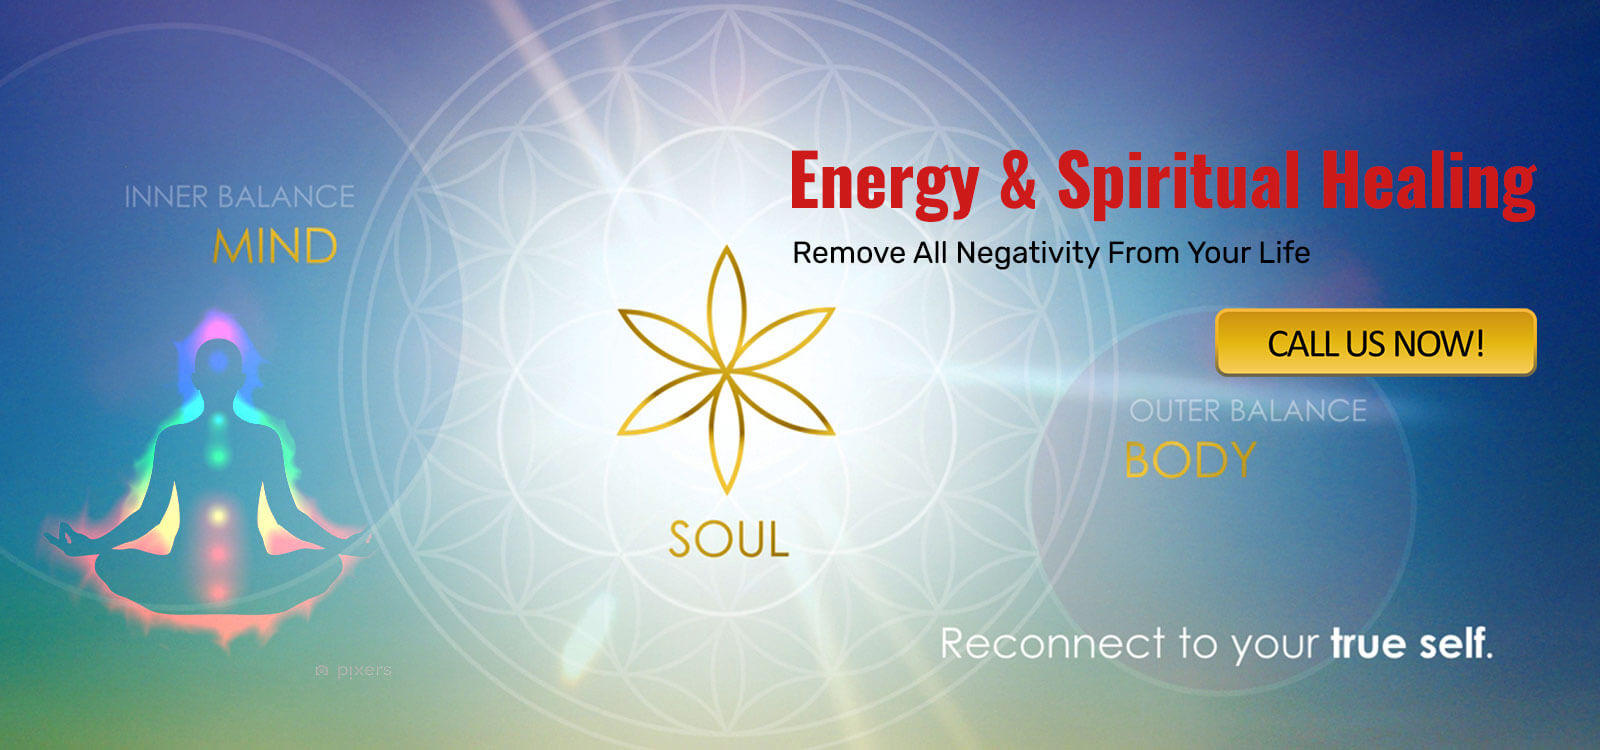 Energy & Spiritual Healing